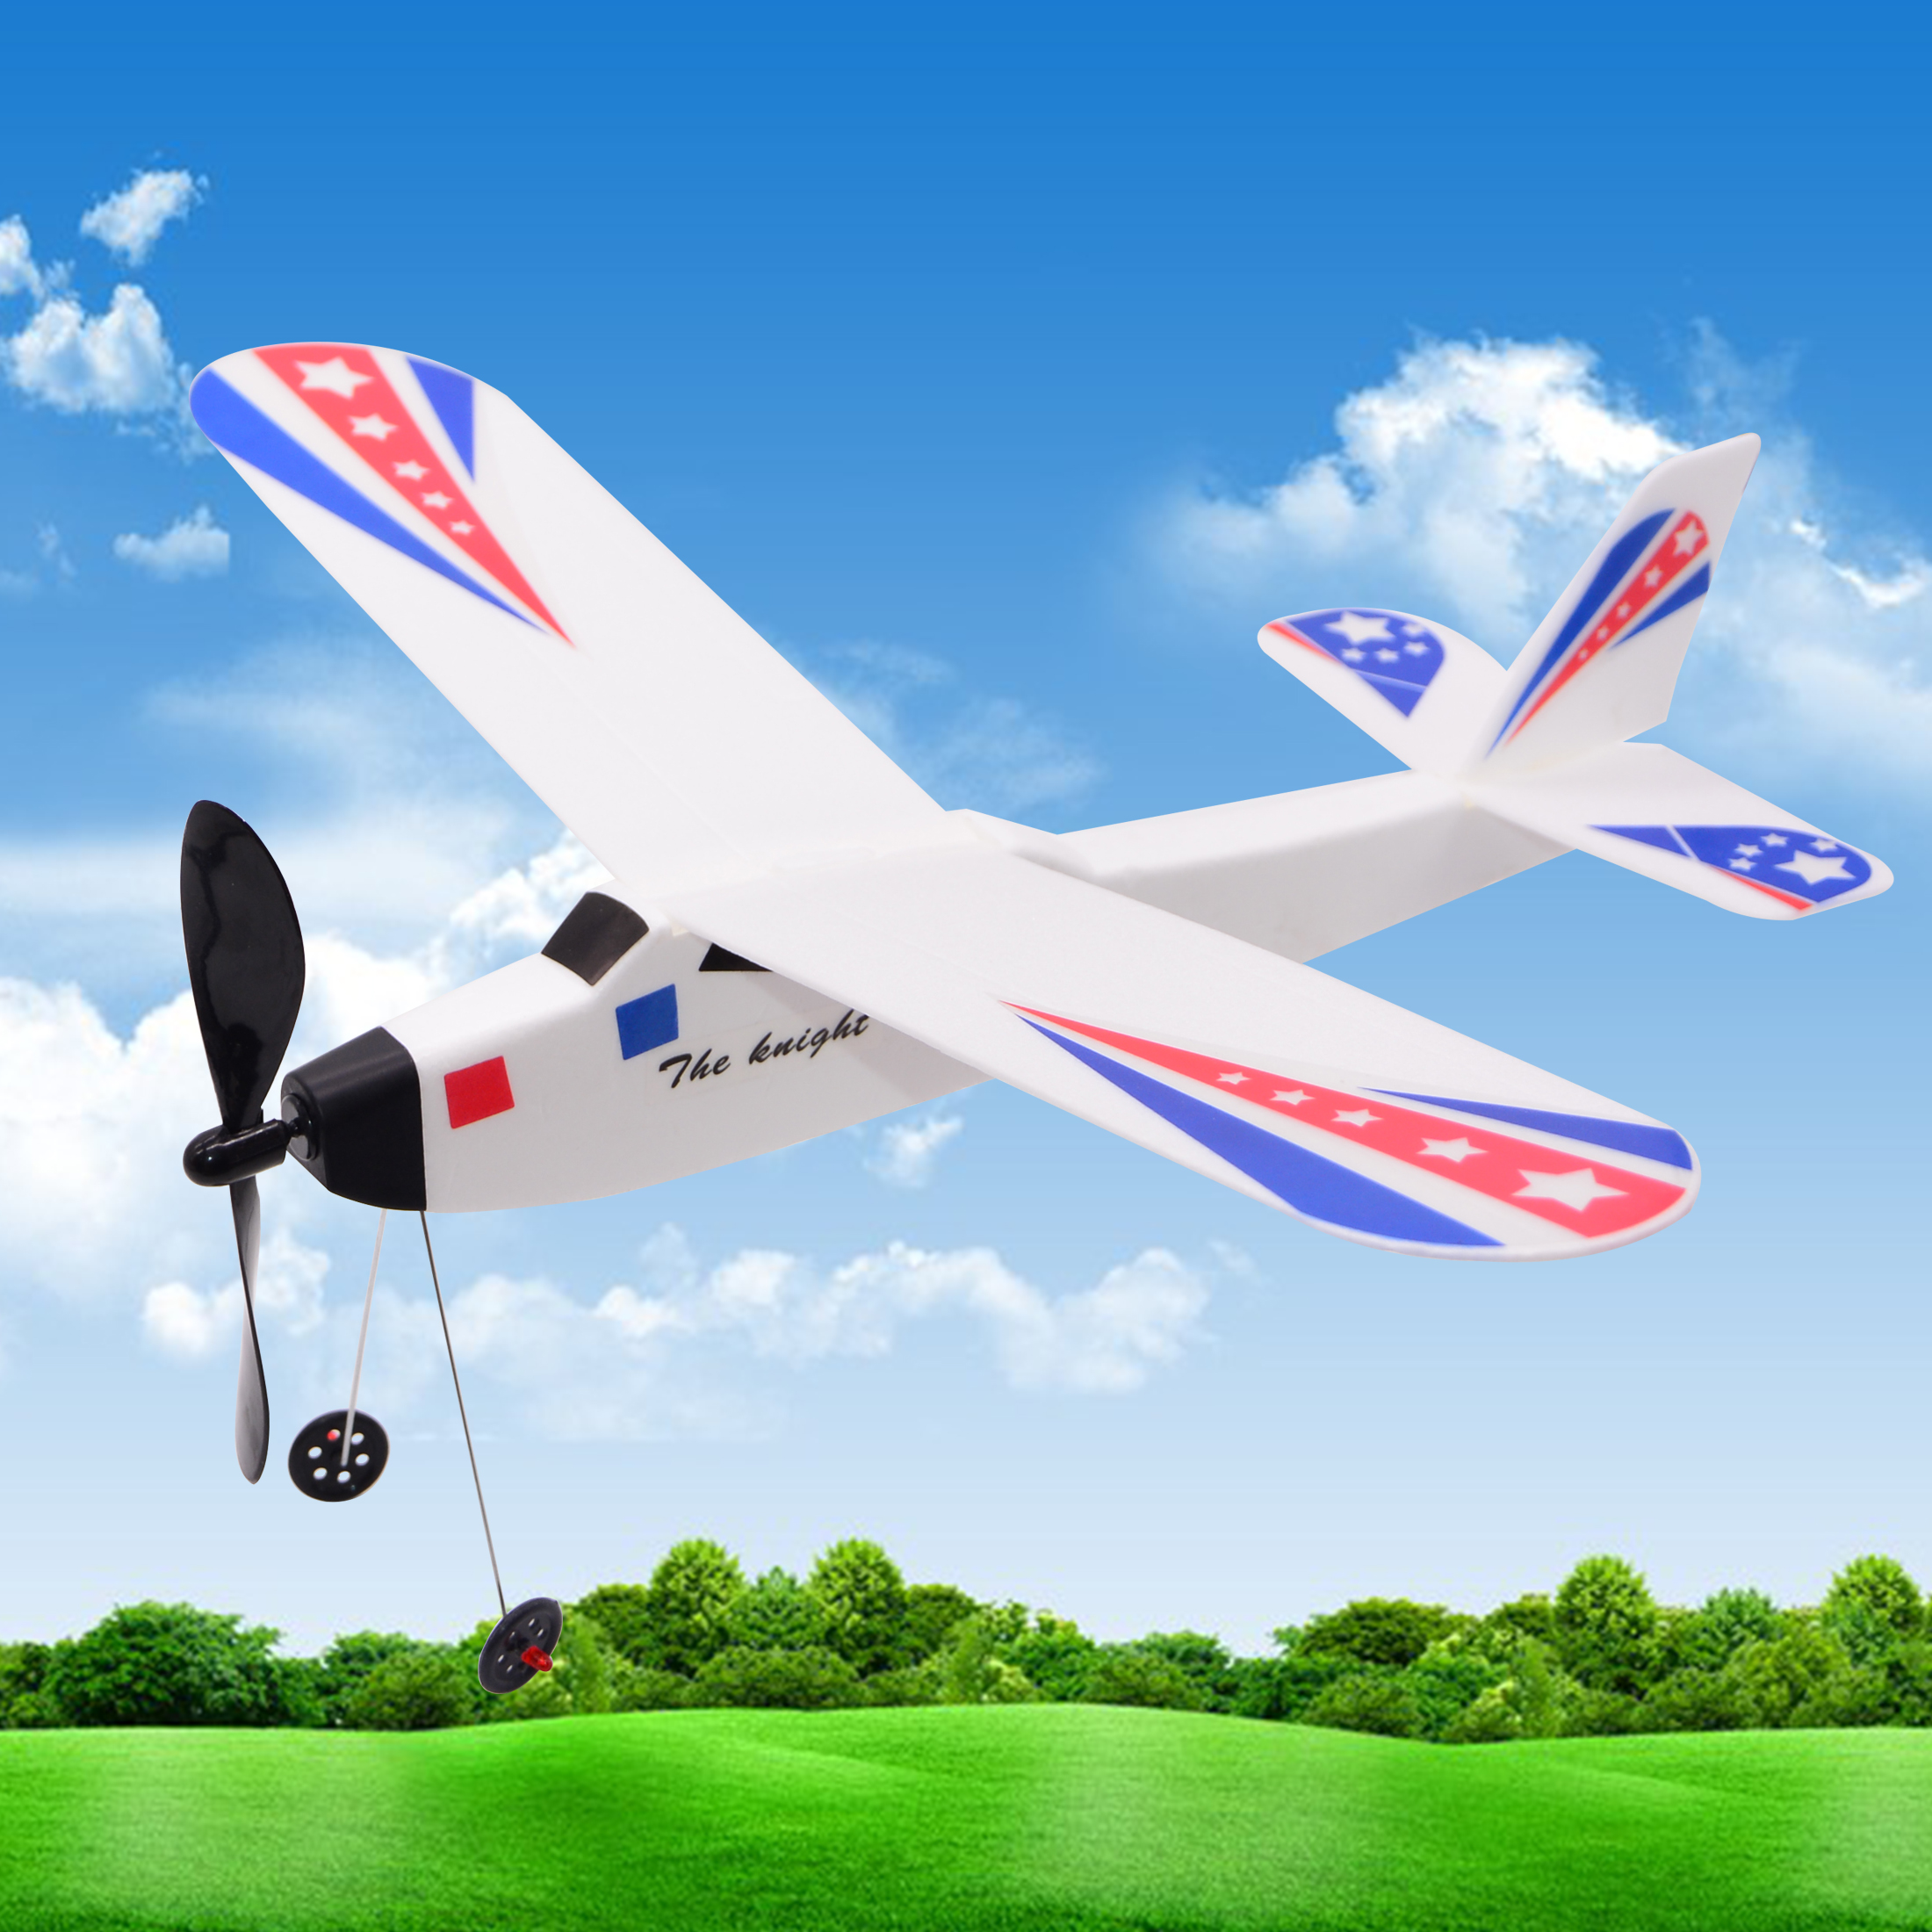 泡沫橡皮筋飞机橡筋动力3D舱身滑翔机闪电战斗机拼装航模厂家直销